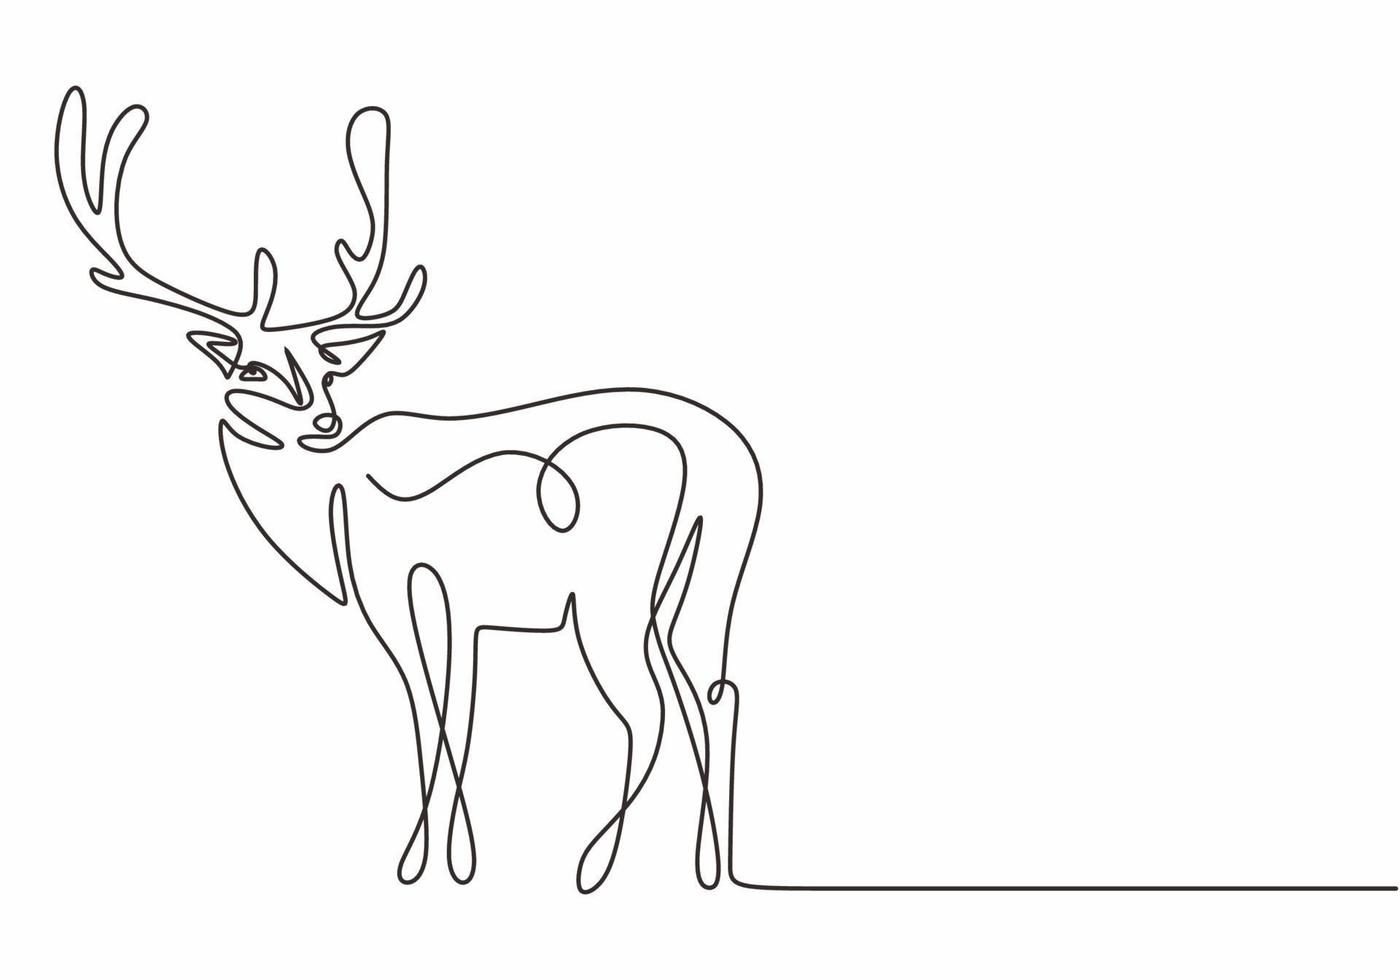 silueta de diseño de una línea de ciervos. dibujado a mano continuo vector